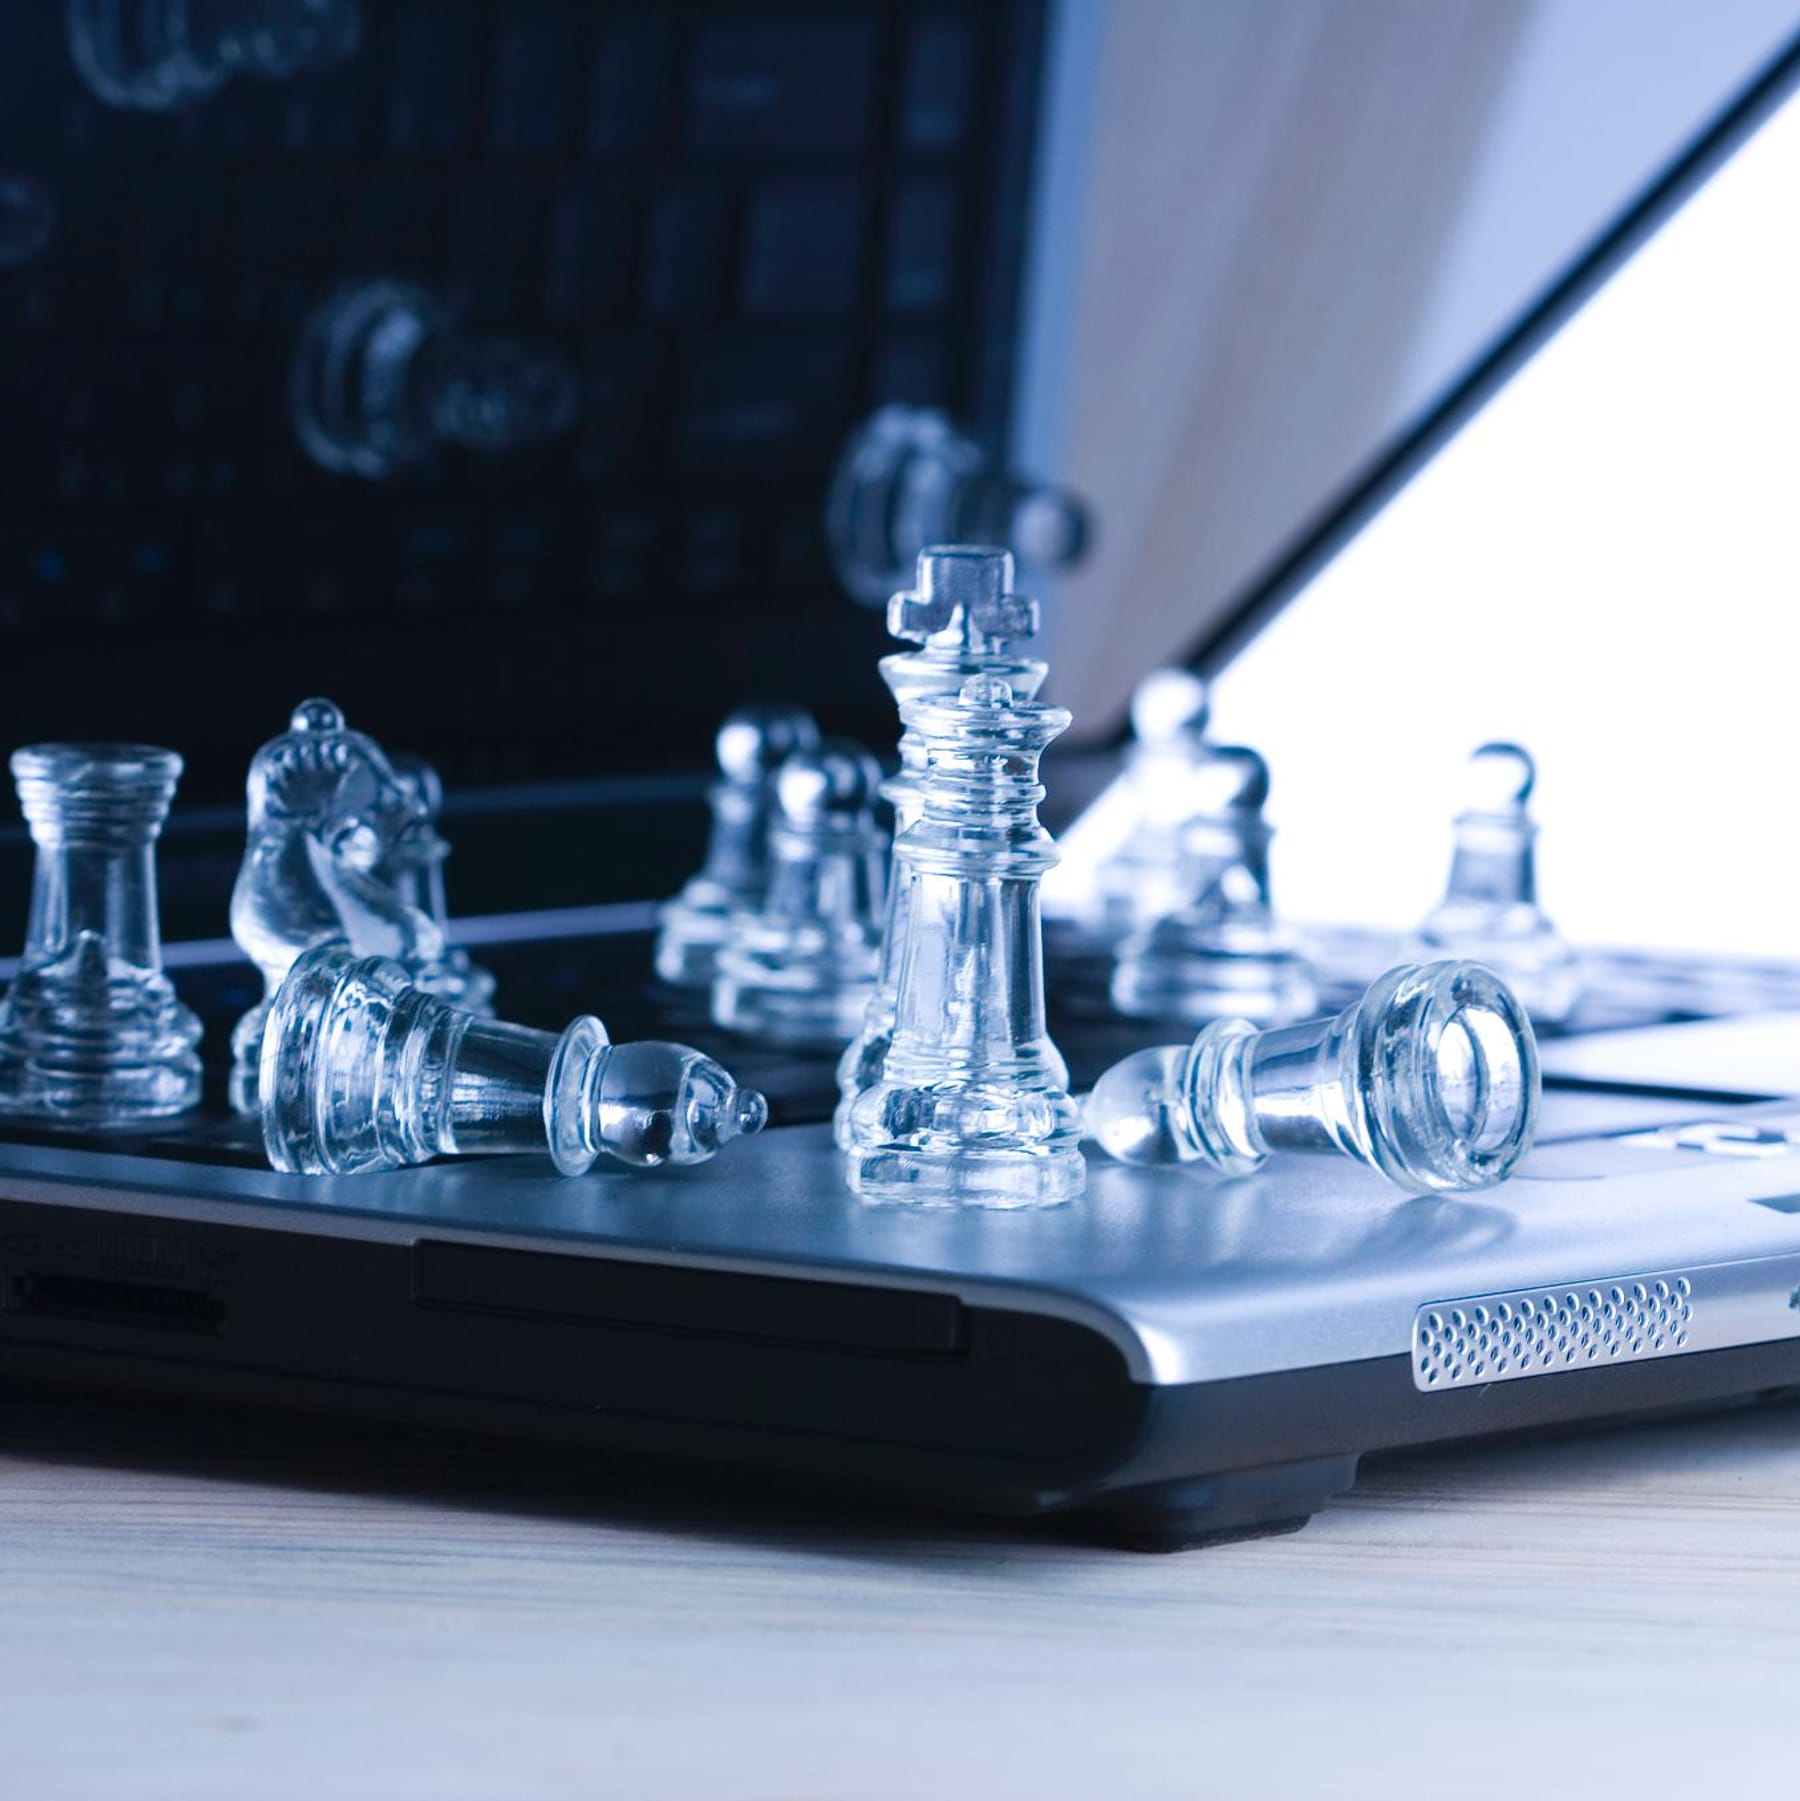 Schach online spielen 7 bekannte Anbieter im Überblick